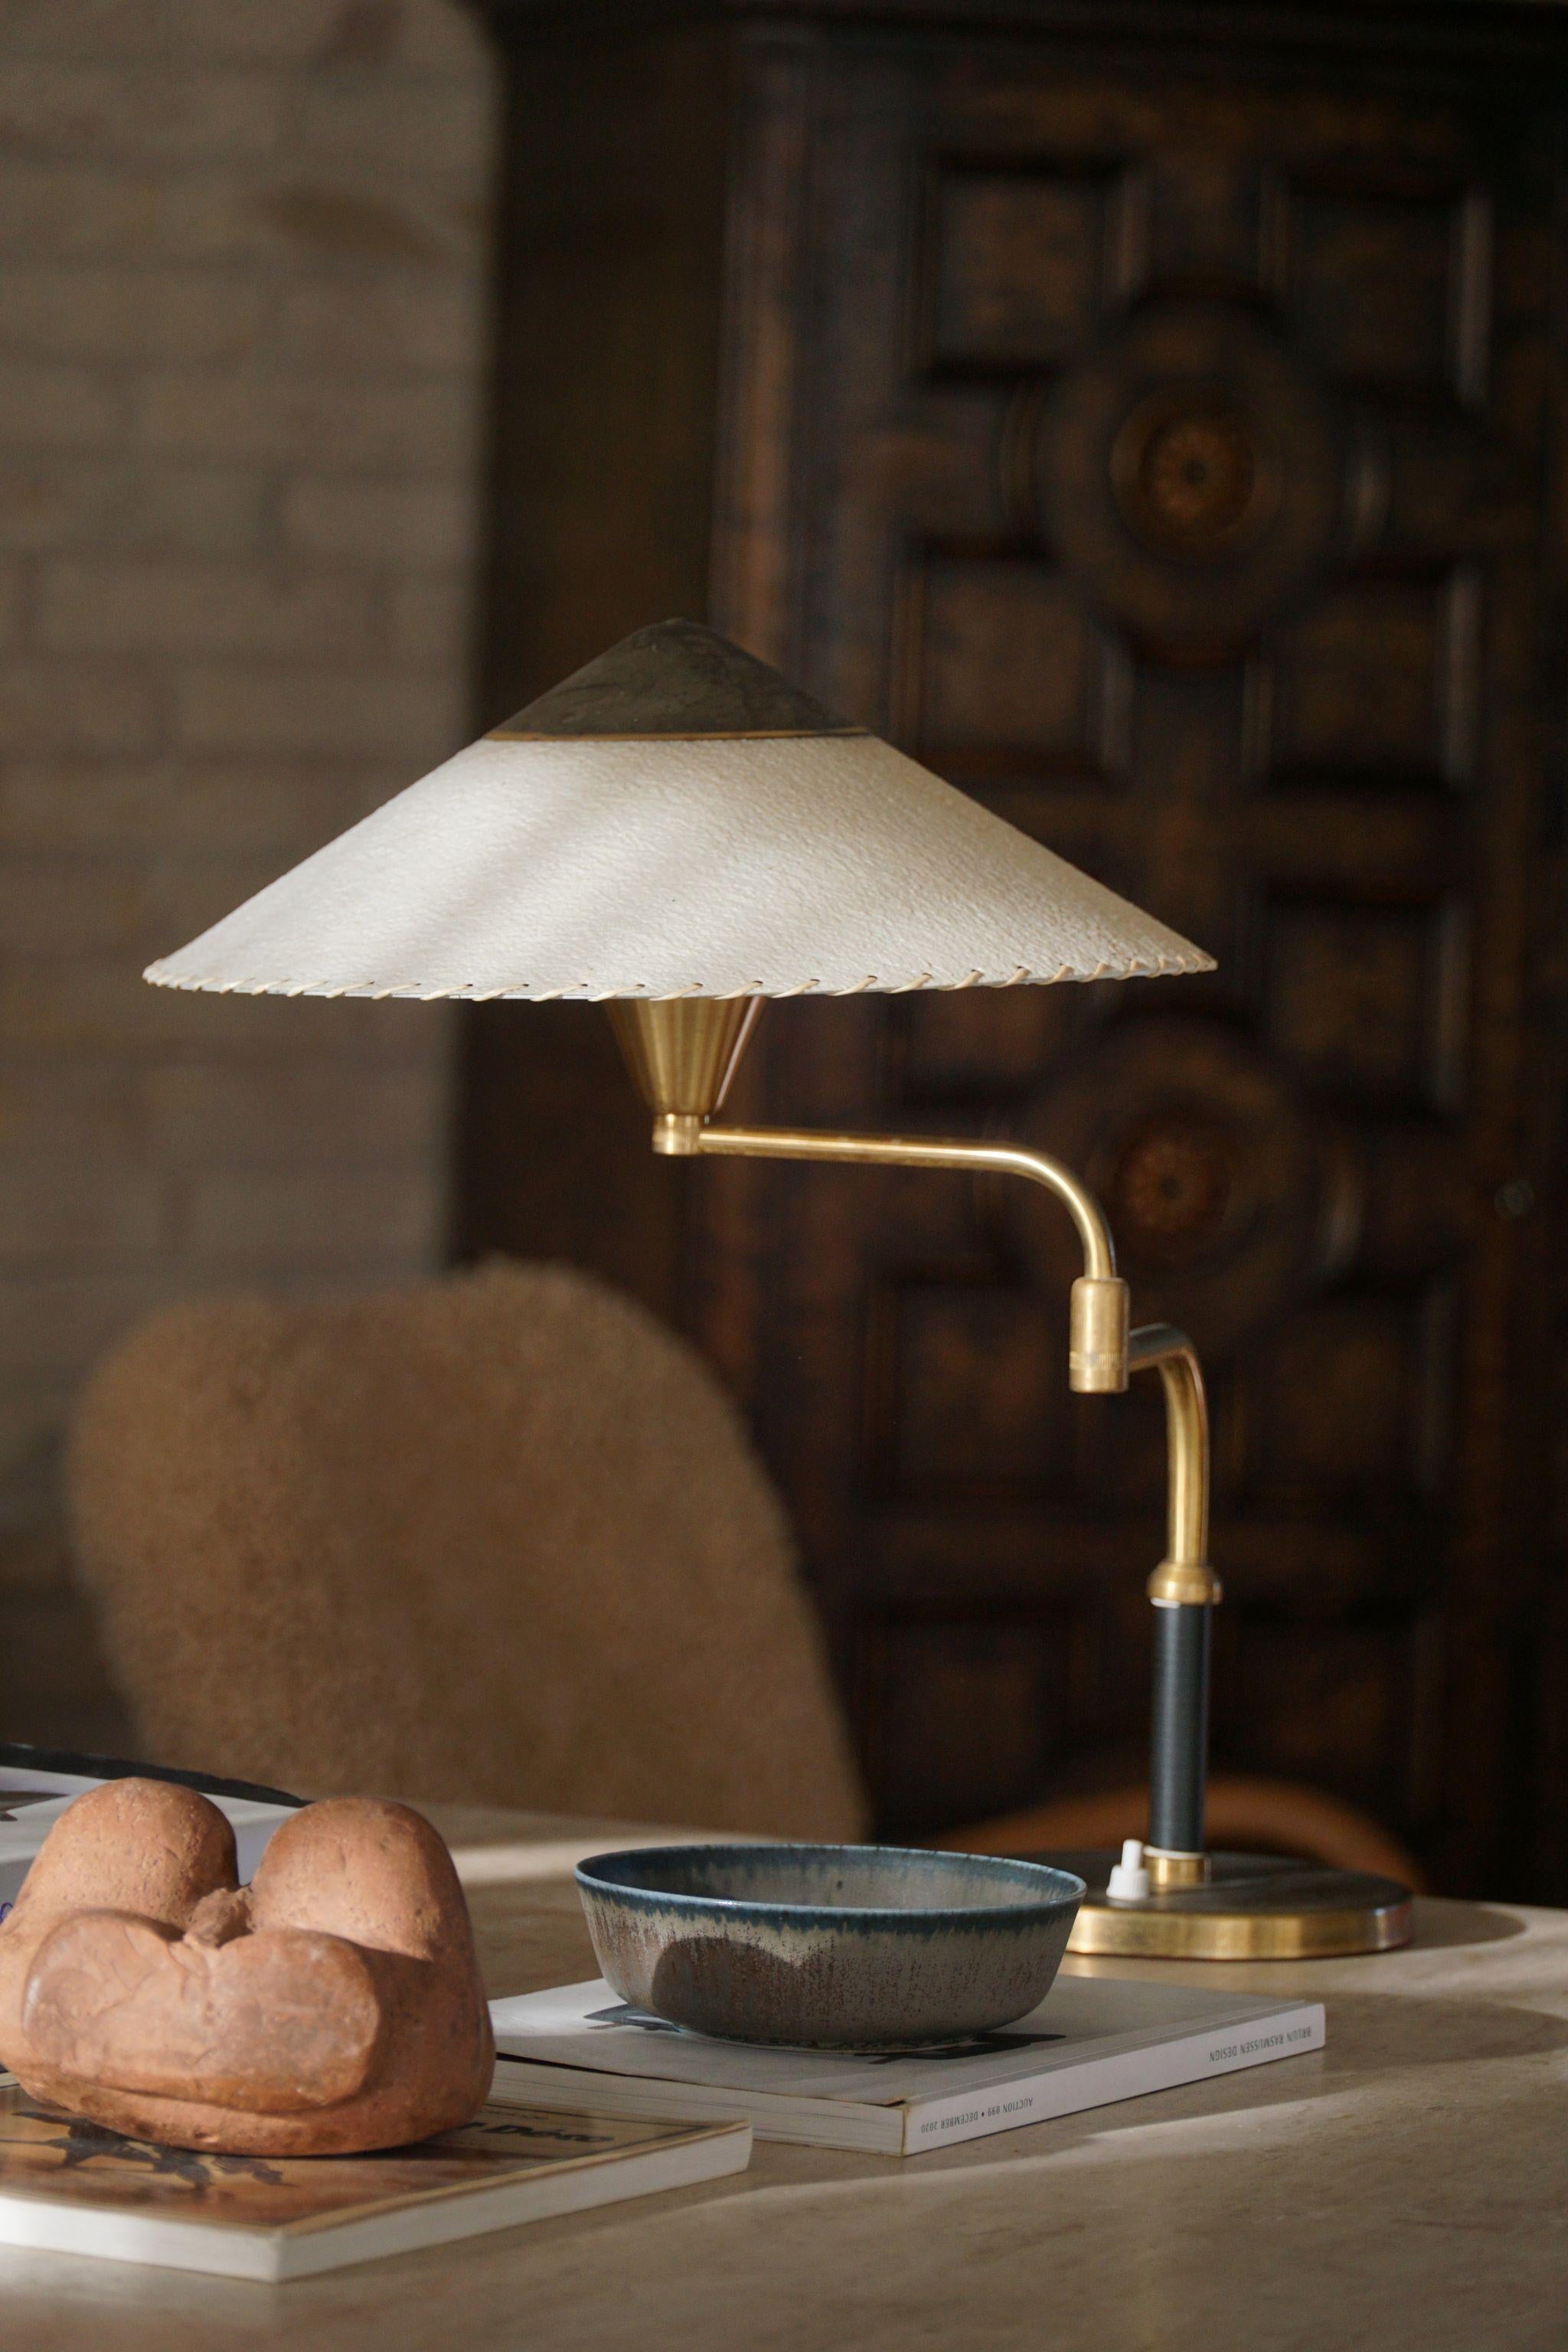 Seltene und elegante verstellbare Tischlampe aus Messing mit Papierschirm, entworfen von Bent Karlby für die dänische Firma LYFA in den 1950er Jahren. Diese mit viel Liebe zum Detail gefertigte Leuchte verkörpert die klaren Linien, die funktionale